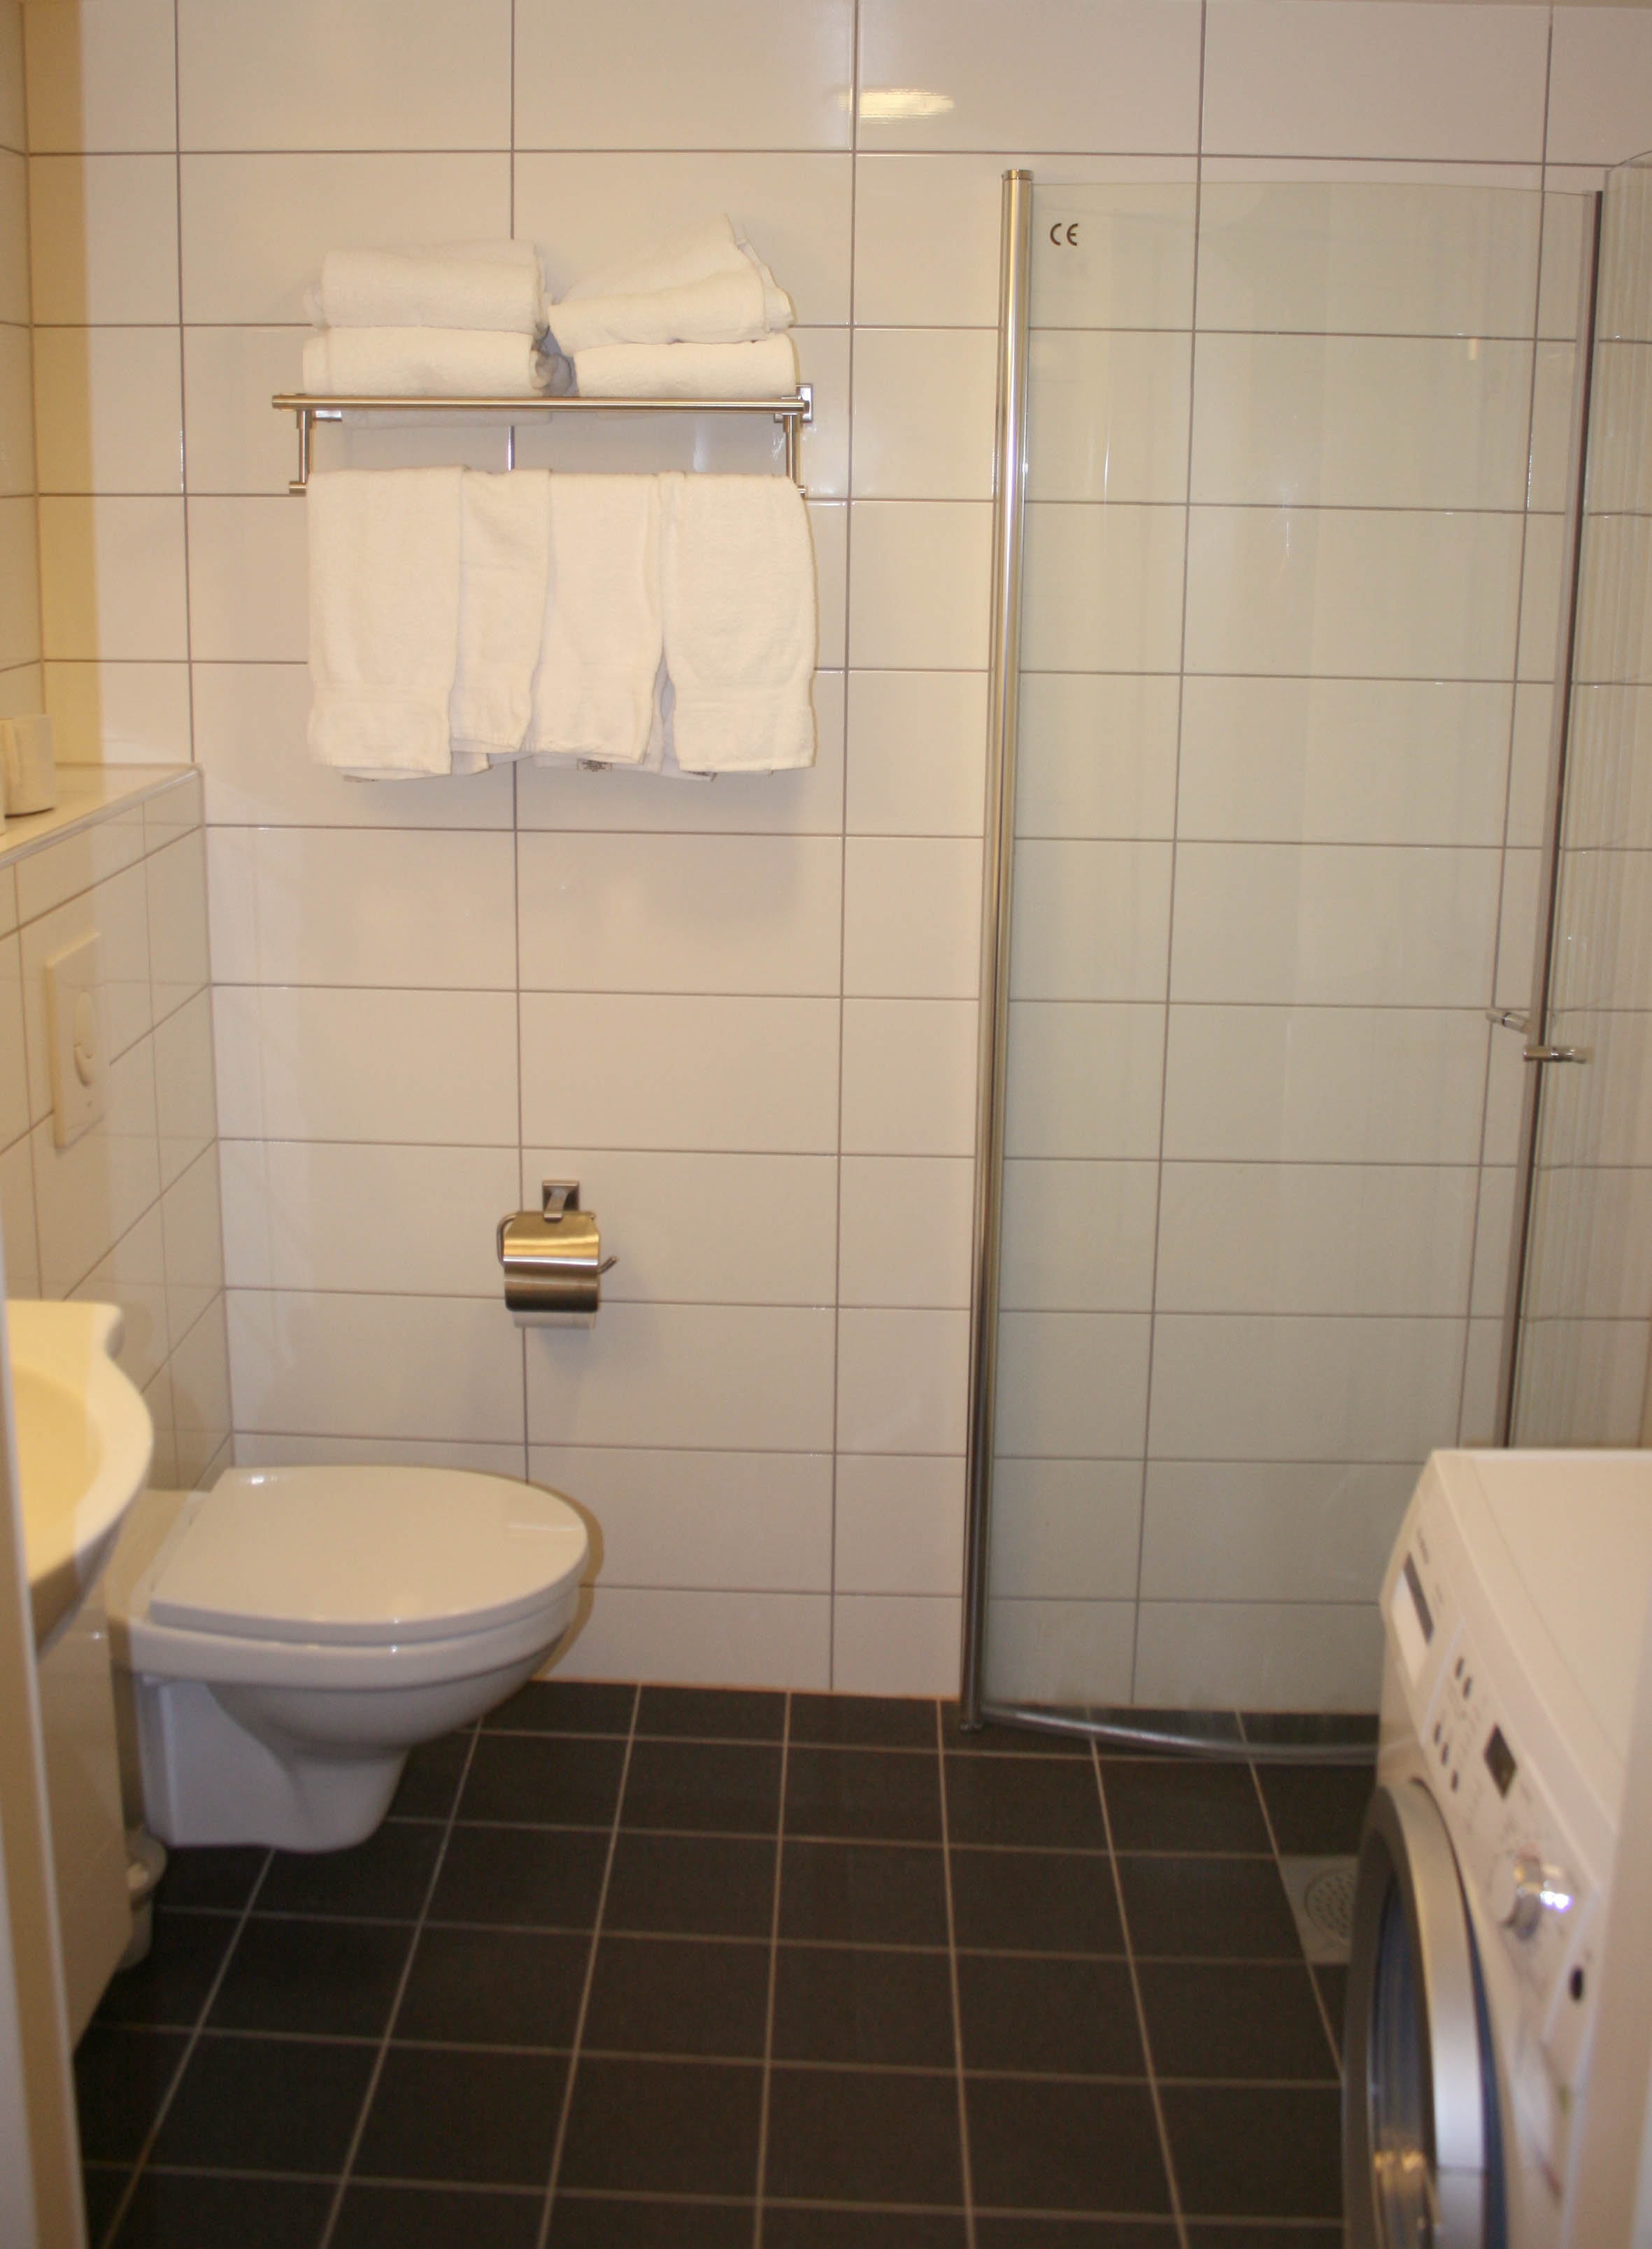 Un exemple de style lumineux d'une salle de bains à Khrouchtchev